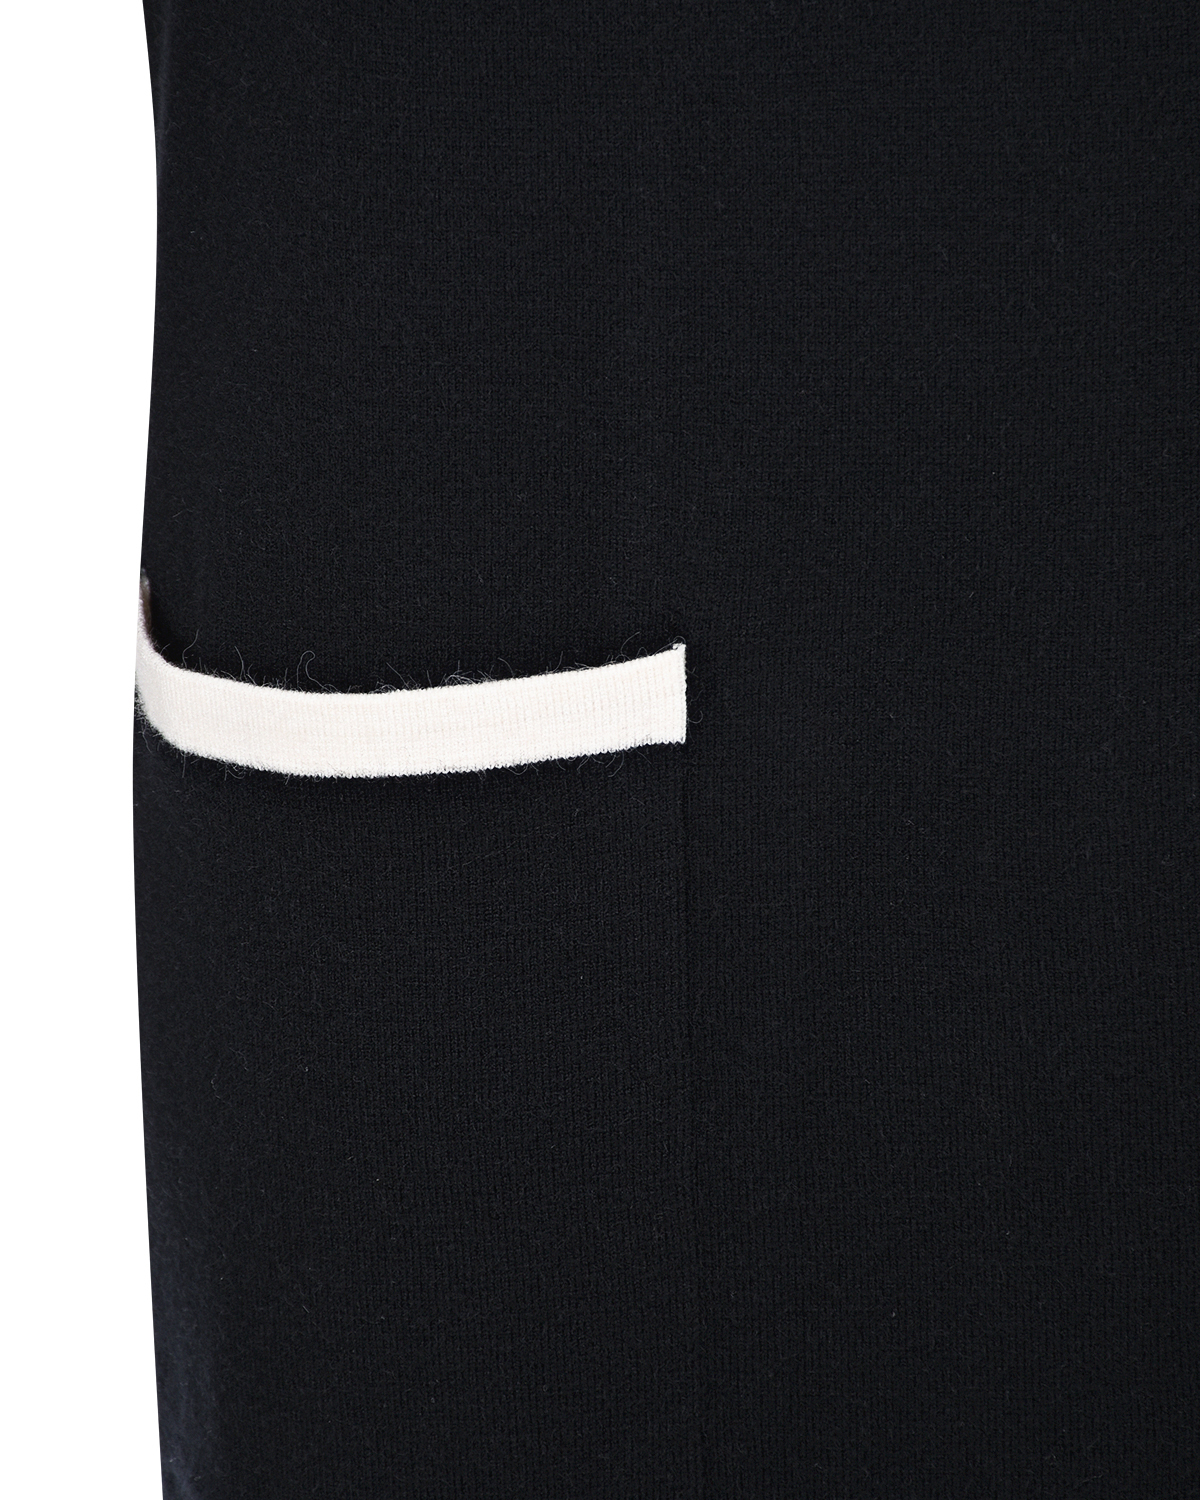 Черное платье с белыми лампасами Deha, размер 42, цвет черный - фото 6